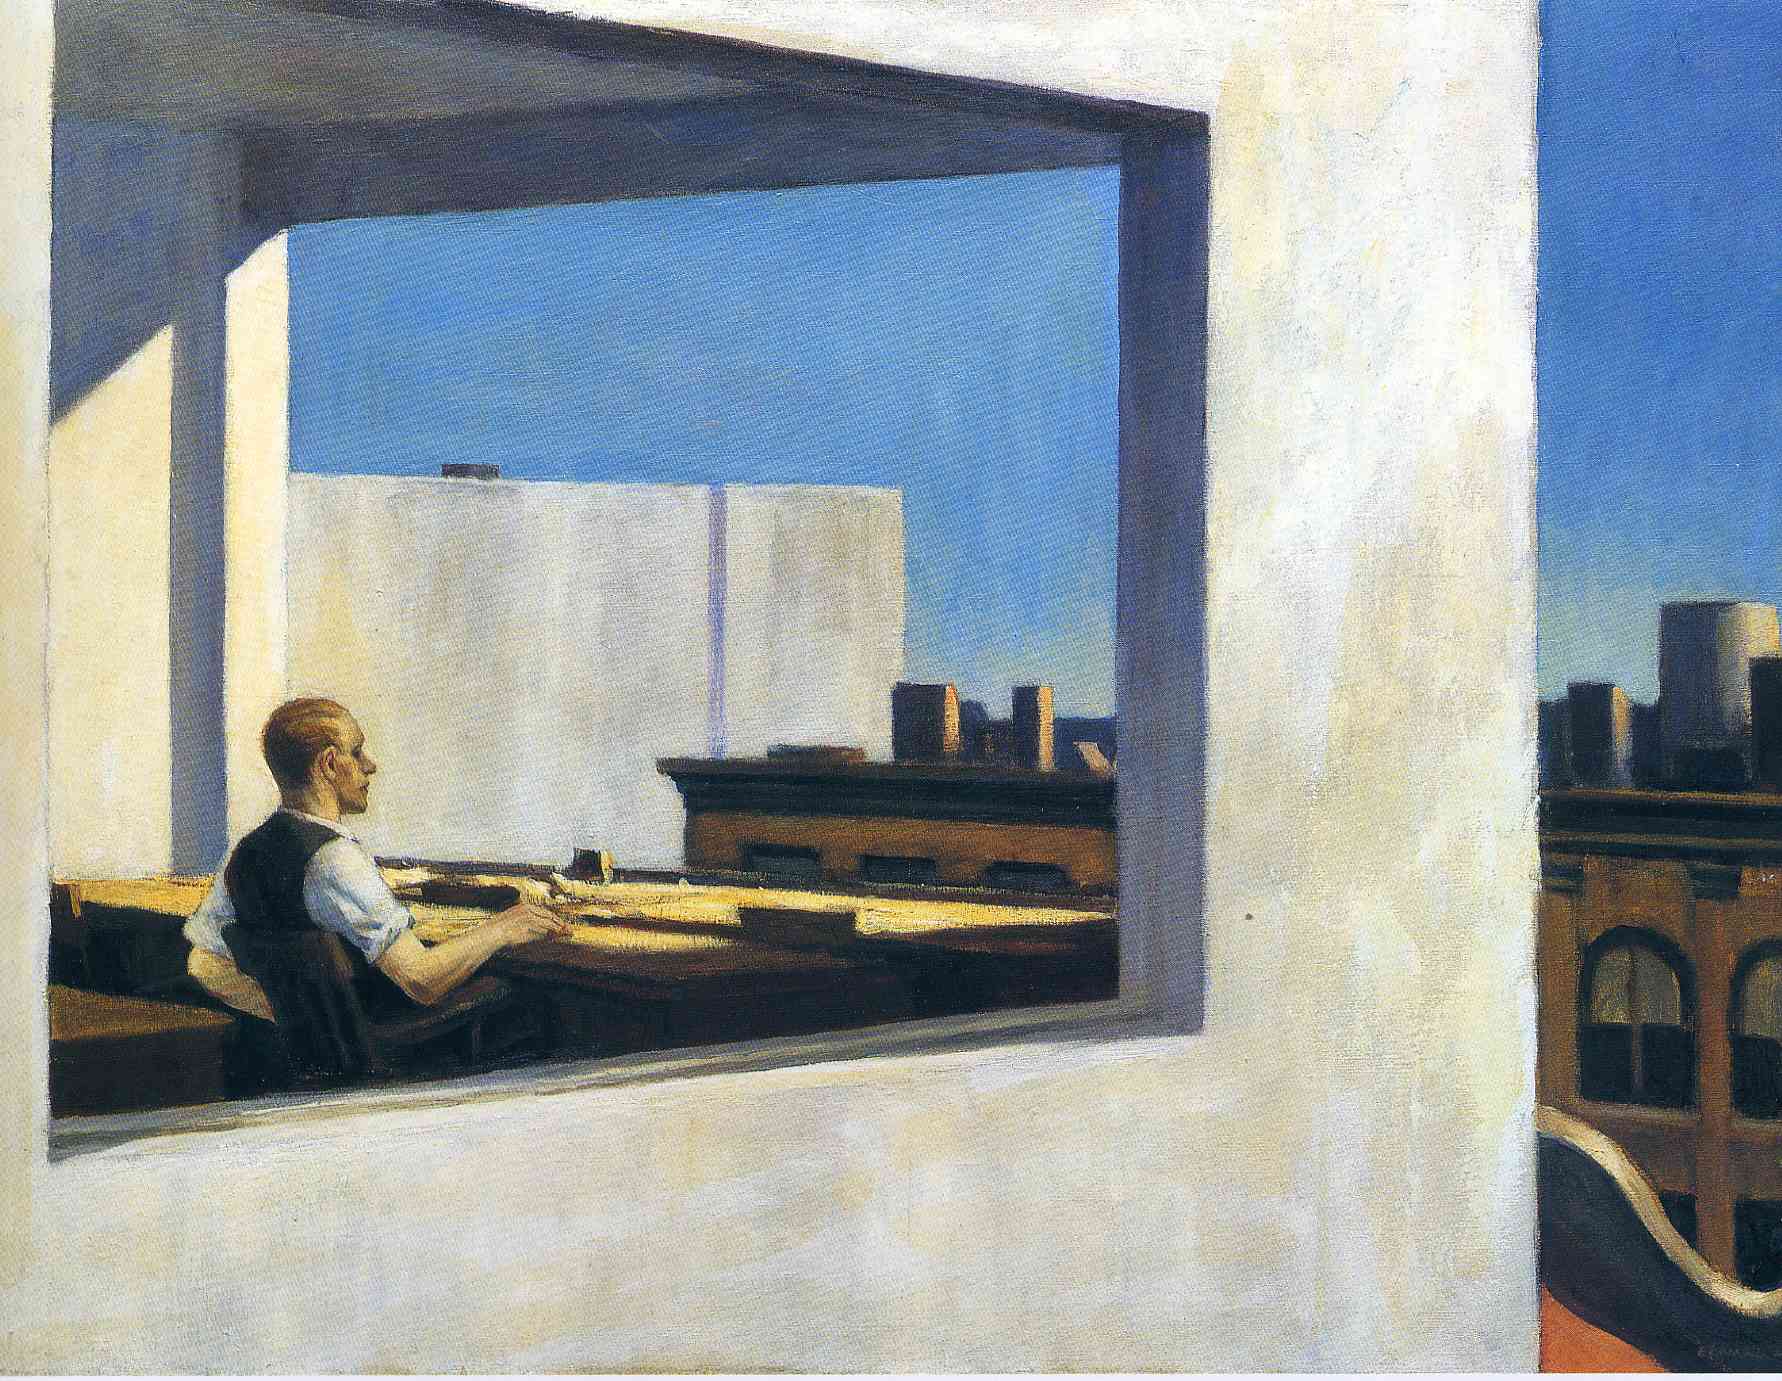 Büro in einer kleinen Stadt by Edward Hopper - 1953 - 71,1 x 101,6 cm Metropolitan Museum of Art